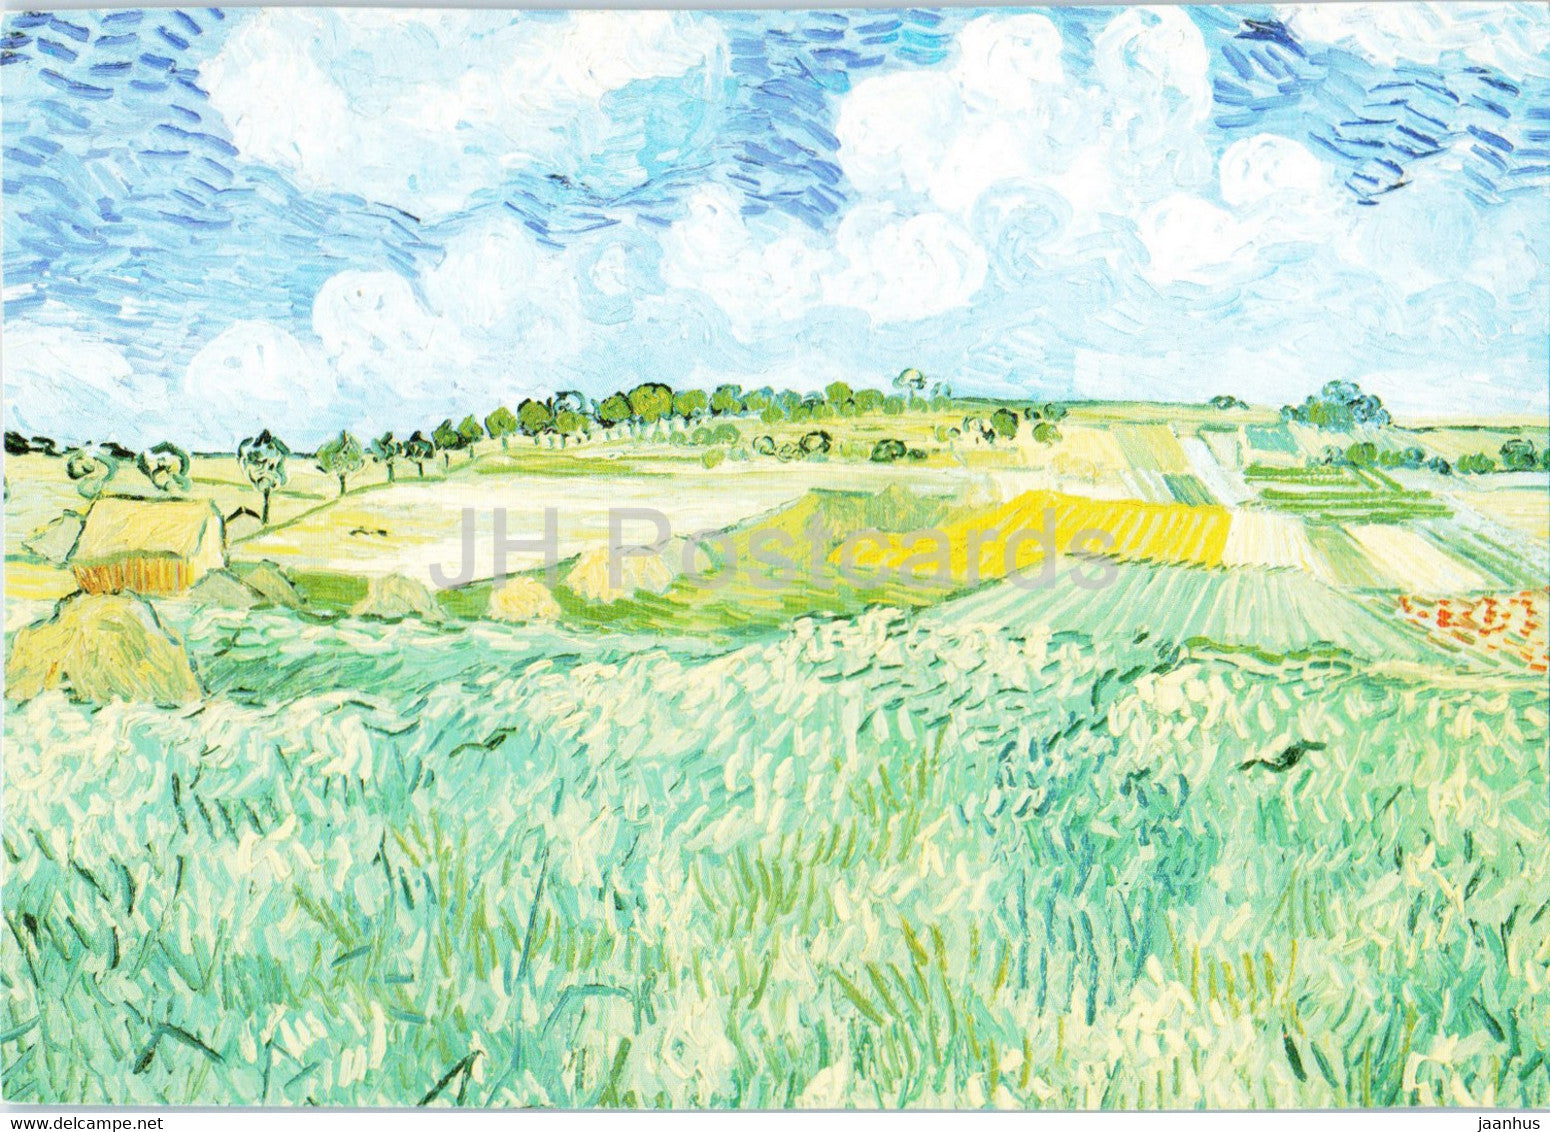 painting by Vincent van Gogh - Die Ebene bei Auvers - Dutch art - Germany - unused - JH Postcards